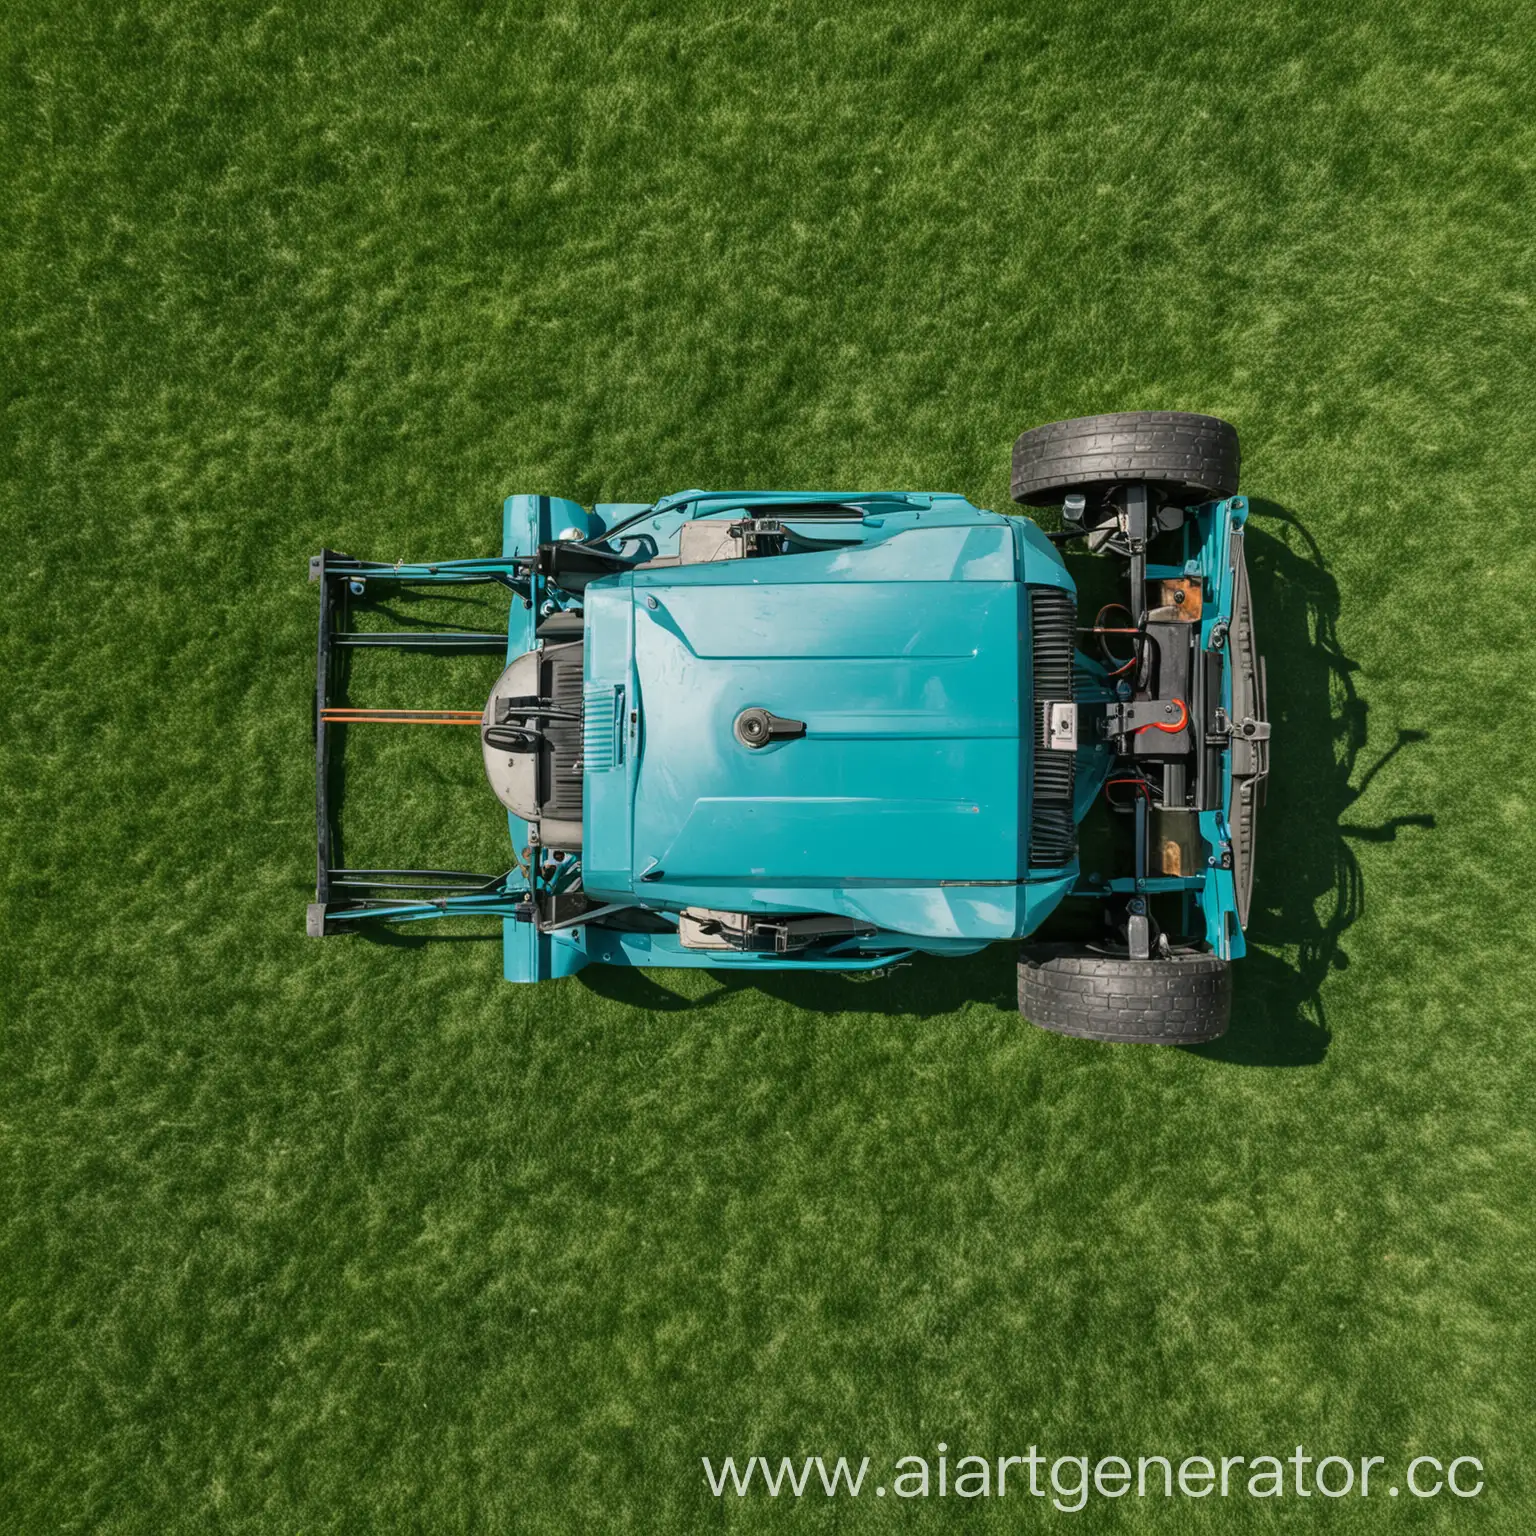 синяя газонокосилка косит зеленый газон, вид сверху 